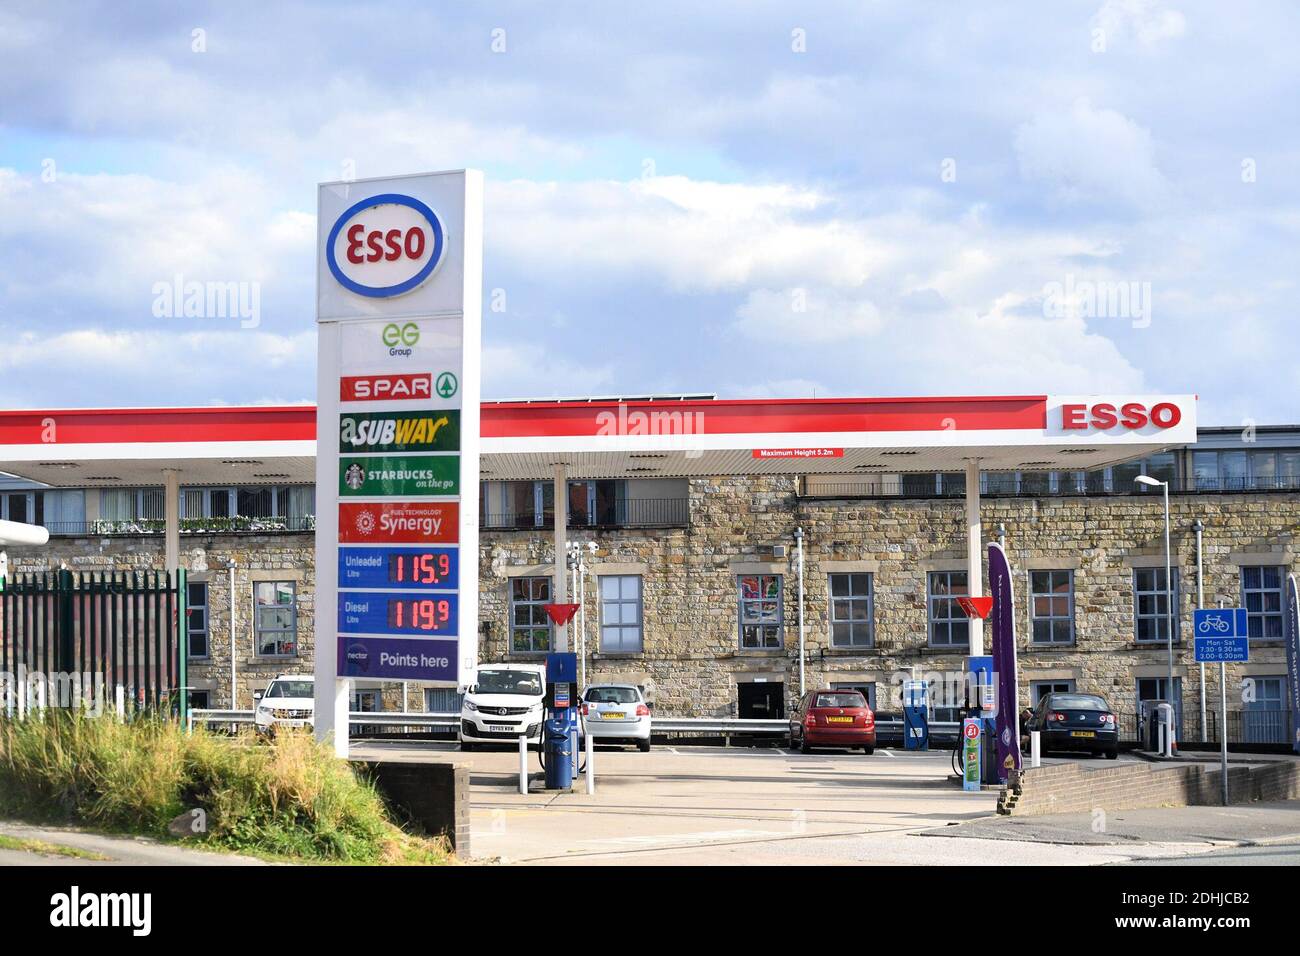 GV von ESSO SPAR Euro Garagen auf Brandlesholme Road, Bury, Donnerstag, 1. Oktober 2020. Supermarktkette Asda wird an zwei Brüder von Blackburn in einem Deal im Wert von £6,8 Mrd. verkauft werden. Die neuen Eigentümer Mohsin und Zuber Issa, die von der Investmentfirma TDR Capital unterstützt wurden, gründeten 2001 ihr Euro-Garagengeschäft mit einer einzigen Tankstelle in Bury, die sie für £150,000 kauften. Das Unternehmen hat mittlerweile Standorte in Europa, den USA und Australien und einen Jahresumsatz von rund 18 Mrd. £. Stockfoto